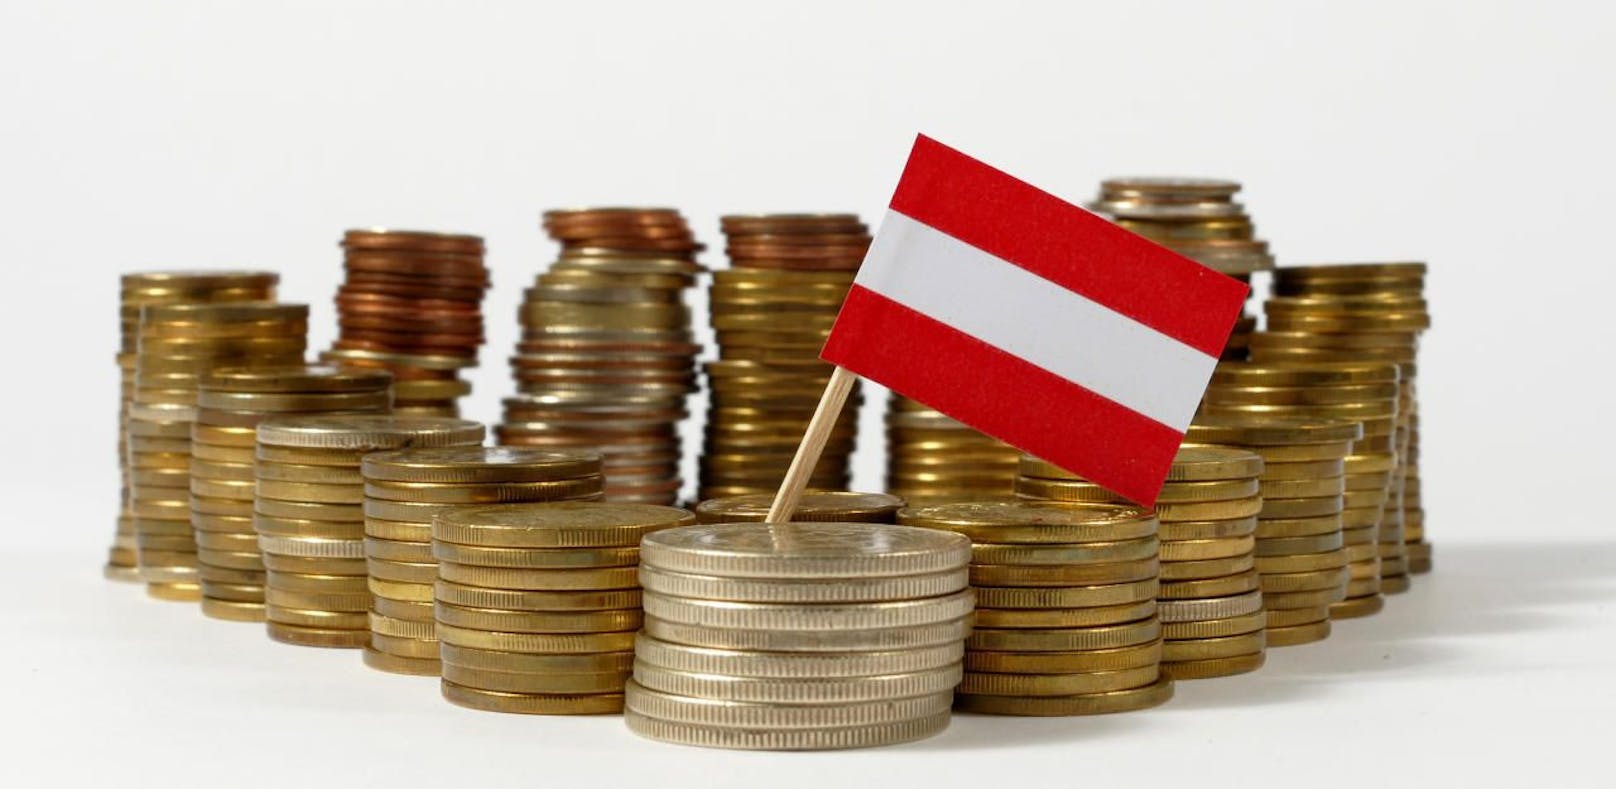 Kosten in Höhe eines dreistelligen Milliardenbetrages sind dem österreichischen Staat bereits aufgrund der Krise entstanden.&nbsp;